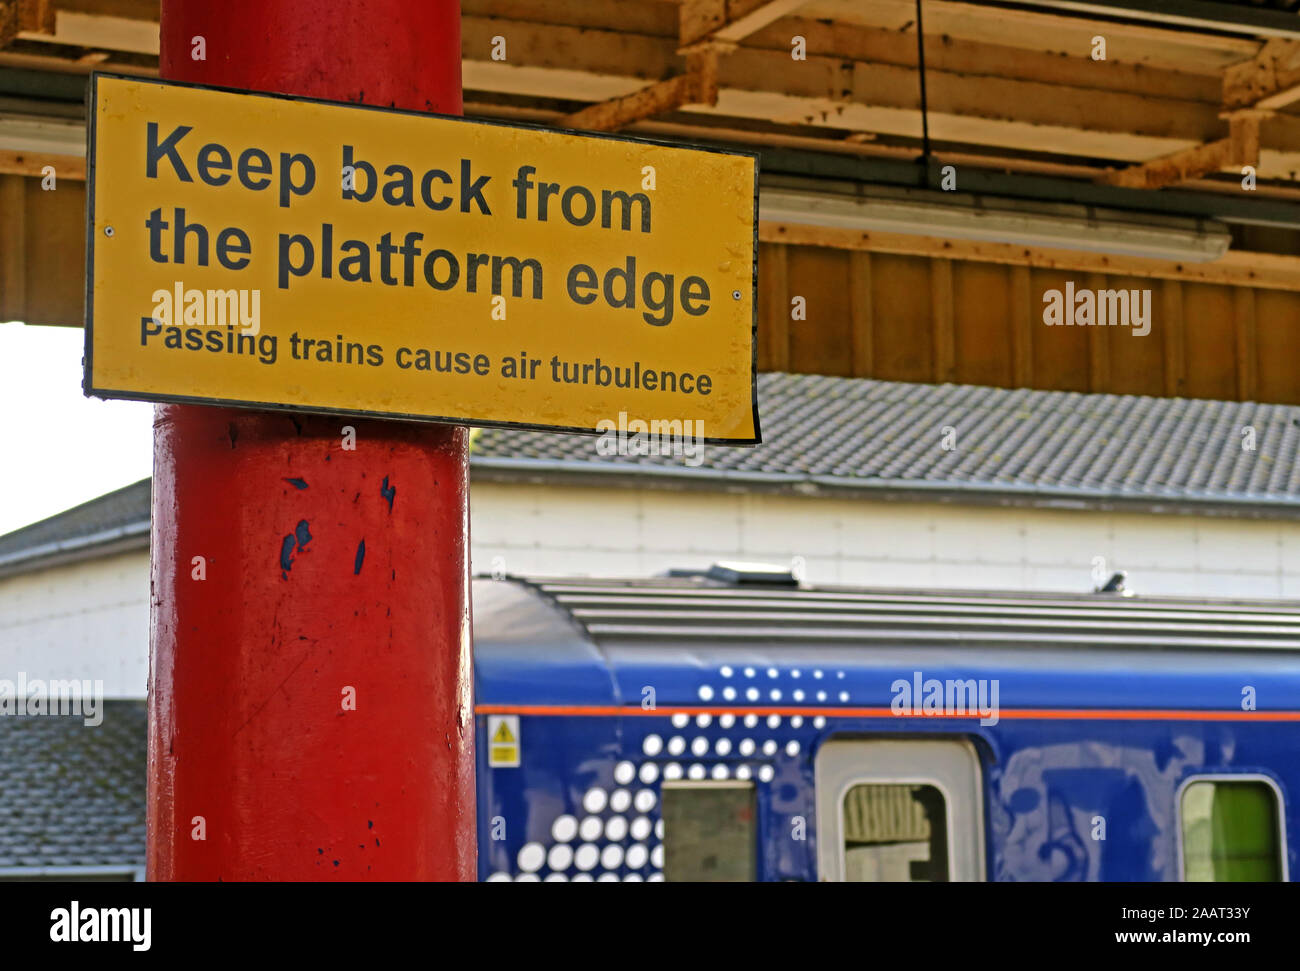 Zurück von der Bahnsteigkante, gelbes Schild, vorbeifahrende Züge verursachen Luftverwirbelungen, auf der Plattform, Hochgeschwindigkeitszüge Stockfoto